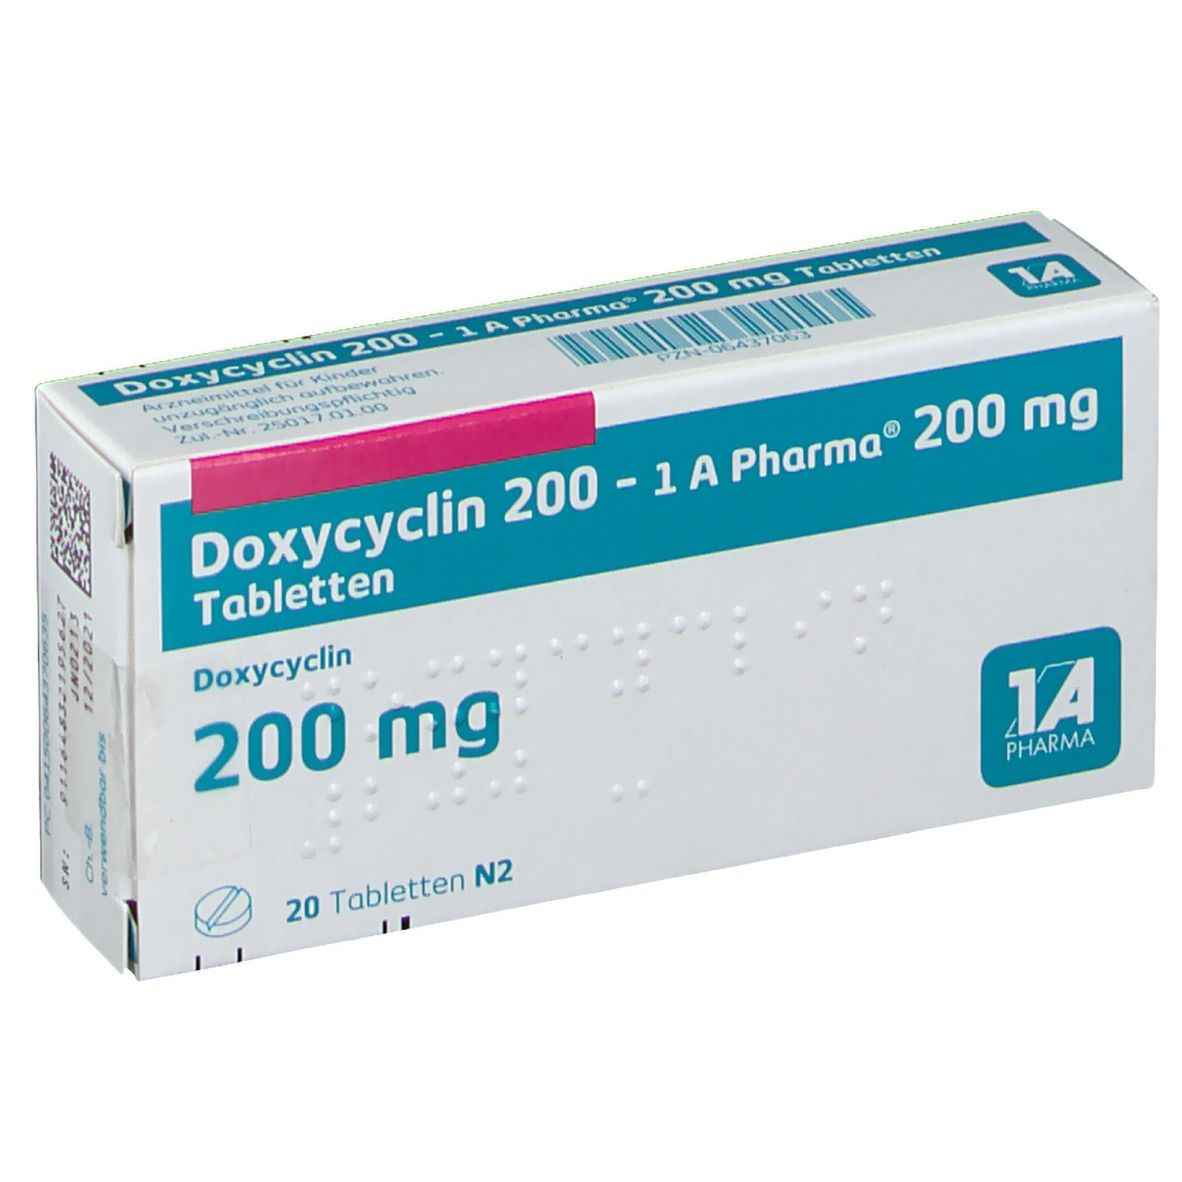 Doxycyclin 200 1A Pharma®